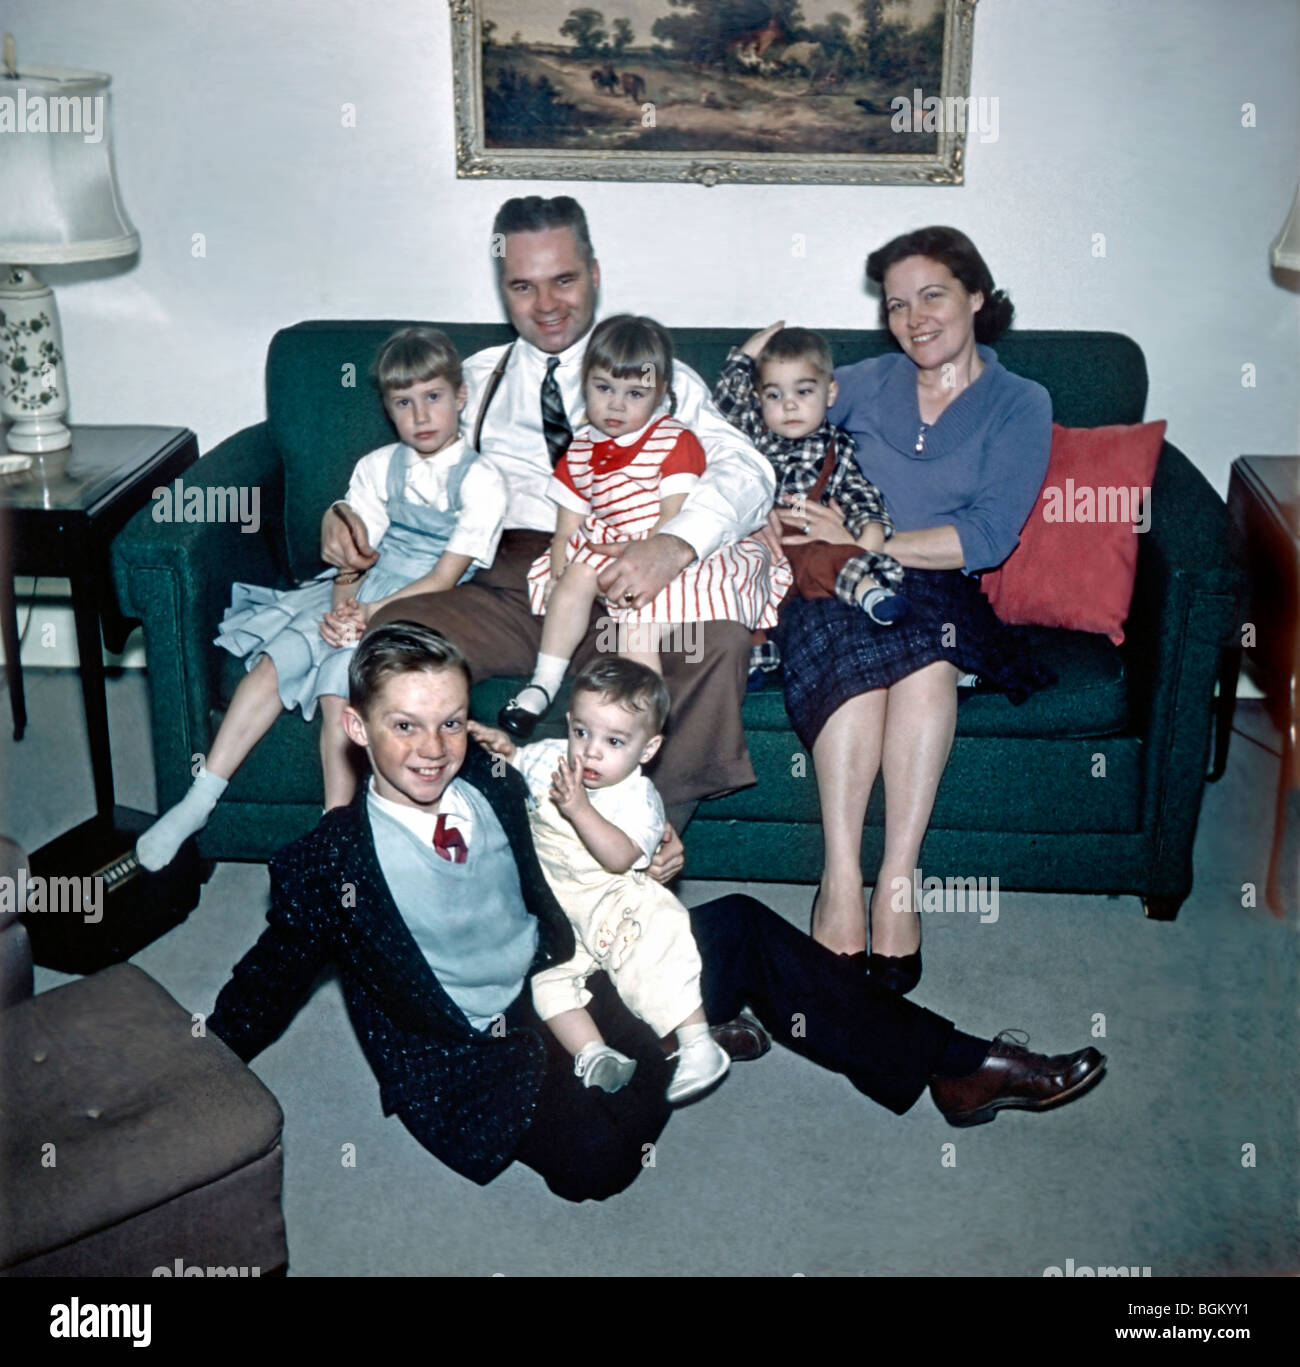 Archives de la famille photo.Grand Portrait de famille 'photos de la vieille famille' Groupe assis sur un canapé dans le salon Maison, photos américaines vintage, New Jersey 1950s Banque D'Images